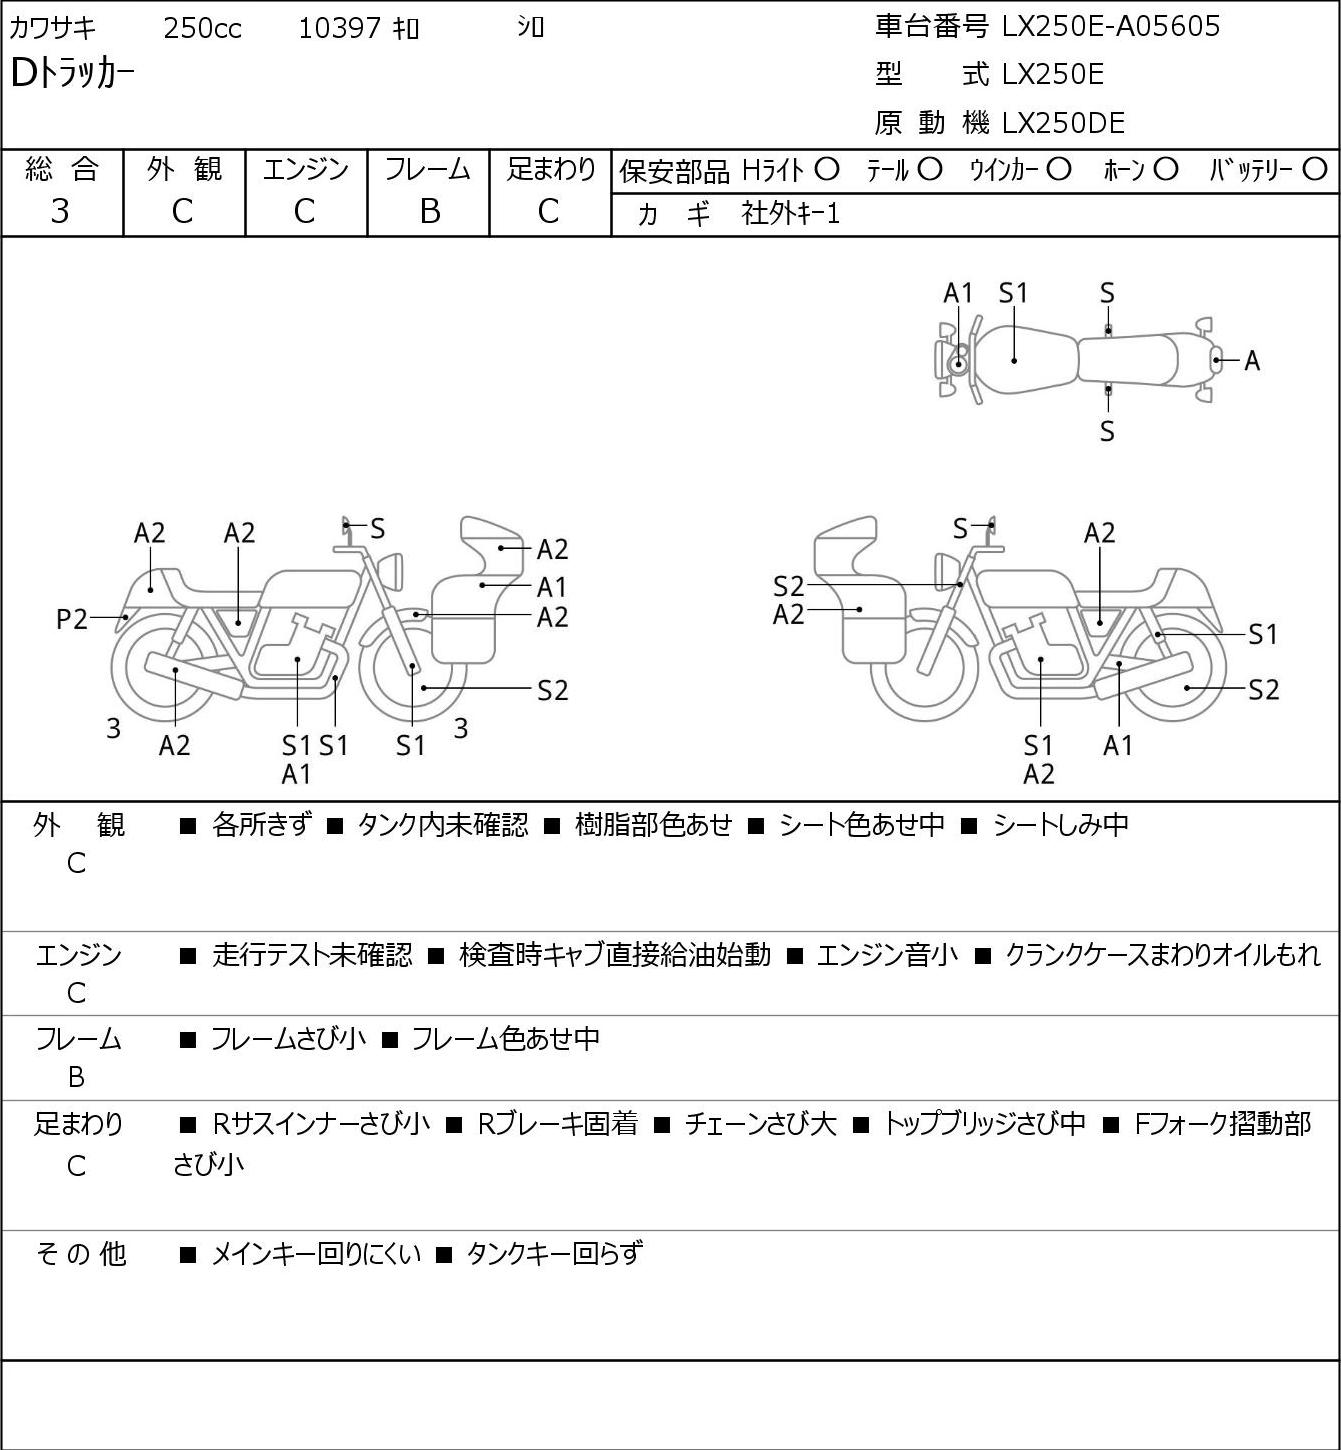 Kawasaki D-TRACKER LX250E г. 10397